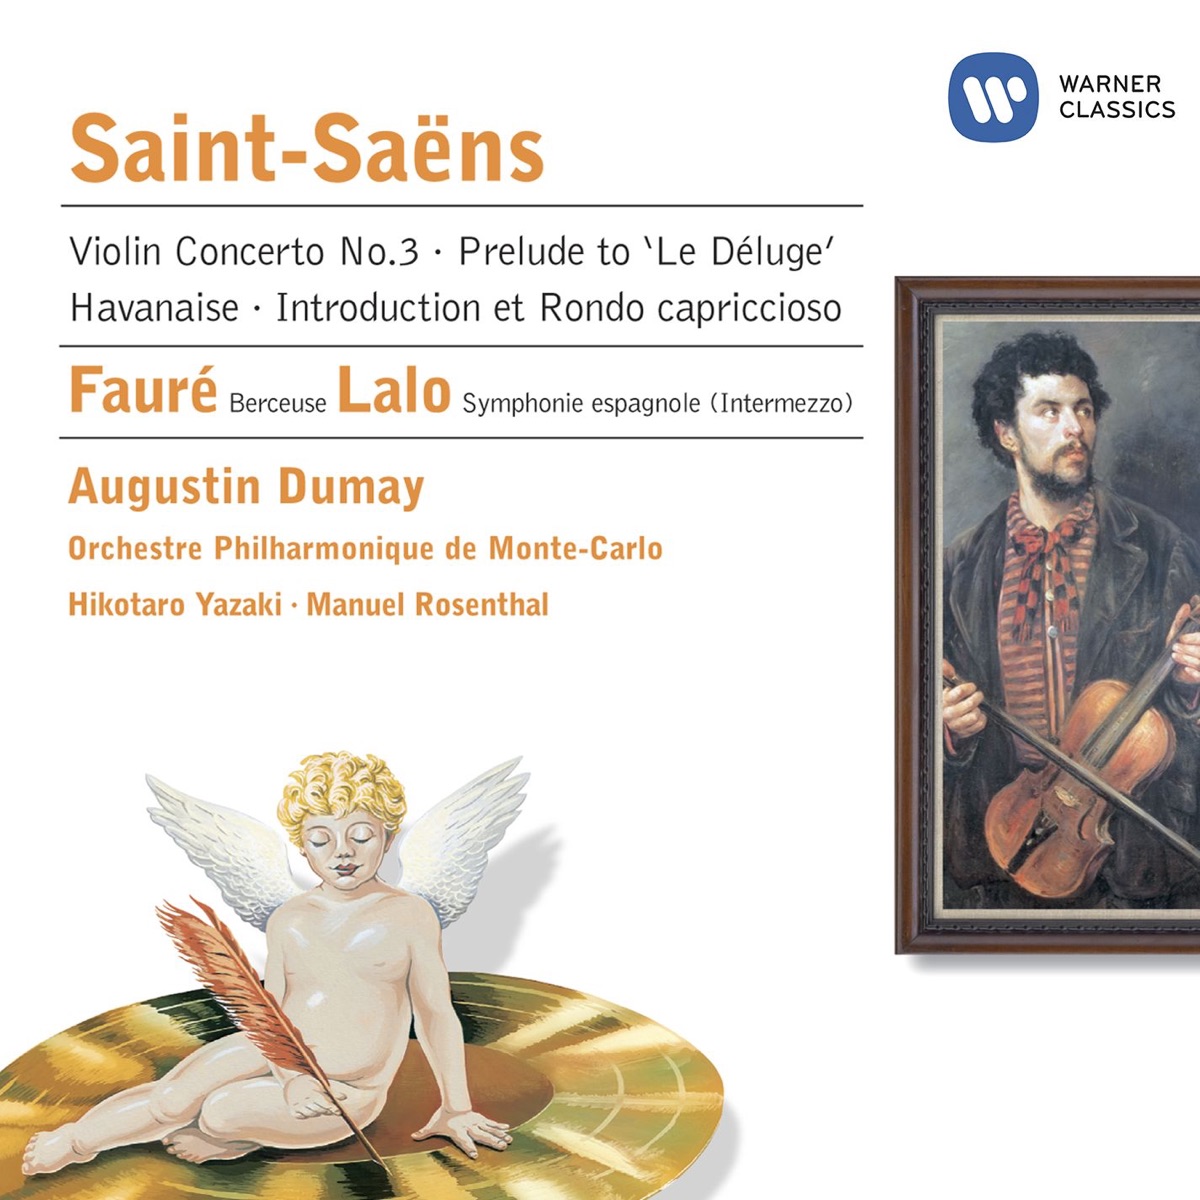 sum patois Gå igennem オーギュスタン・デュメイ & モンテ・カルロ・フィルハーモニー管弦楽団の「Saint-Saëns: Violin Concerto No 3」をApple  Musicで